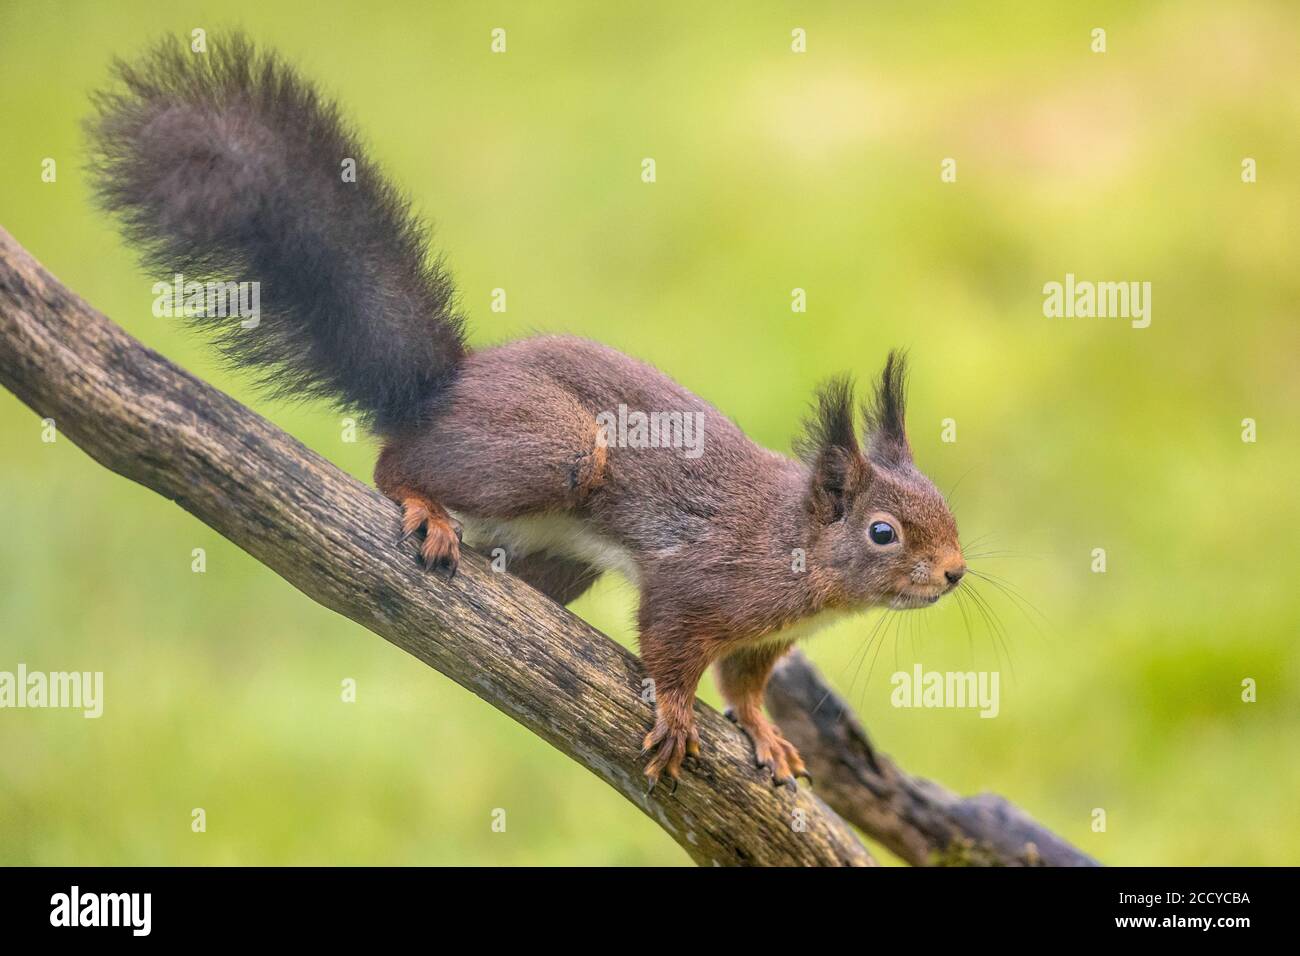 Écureuil roux (Sciurus vulgaris) gros plan d'un animal sombre assis sur la branche pendant recherche de danger Banque D'Images